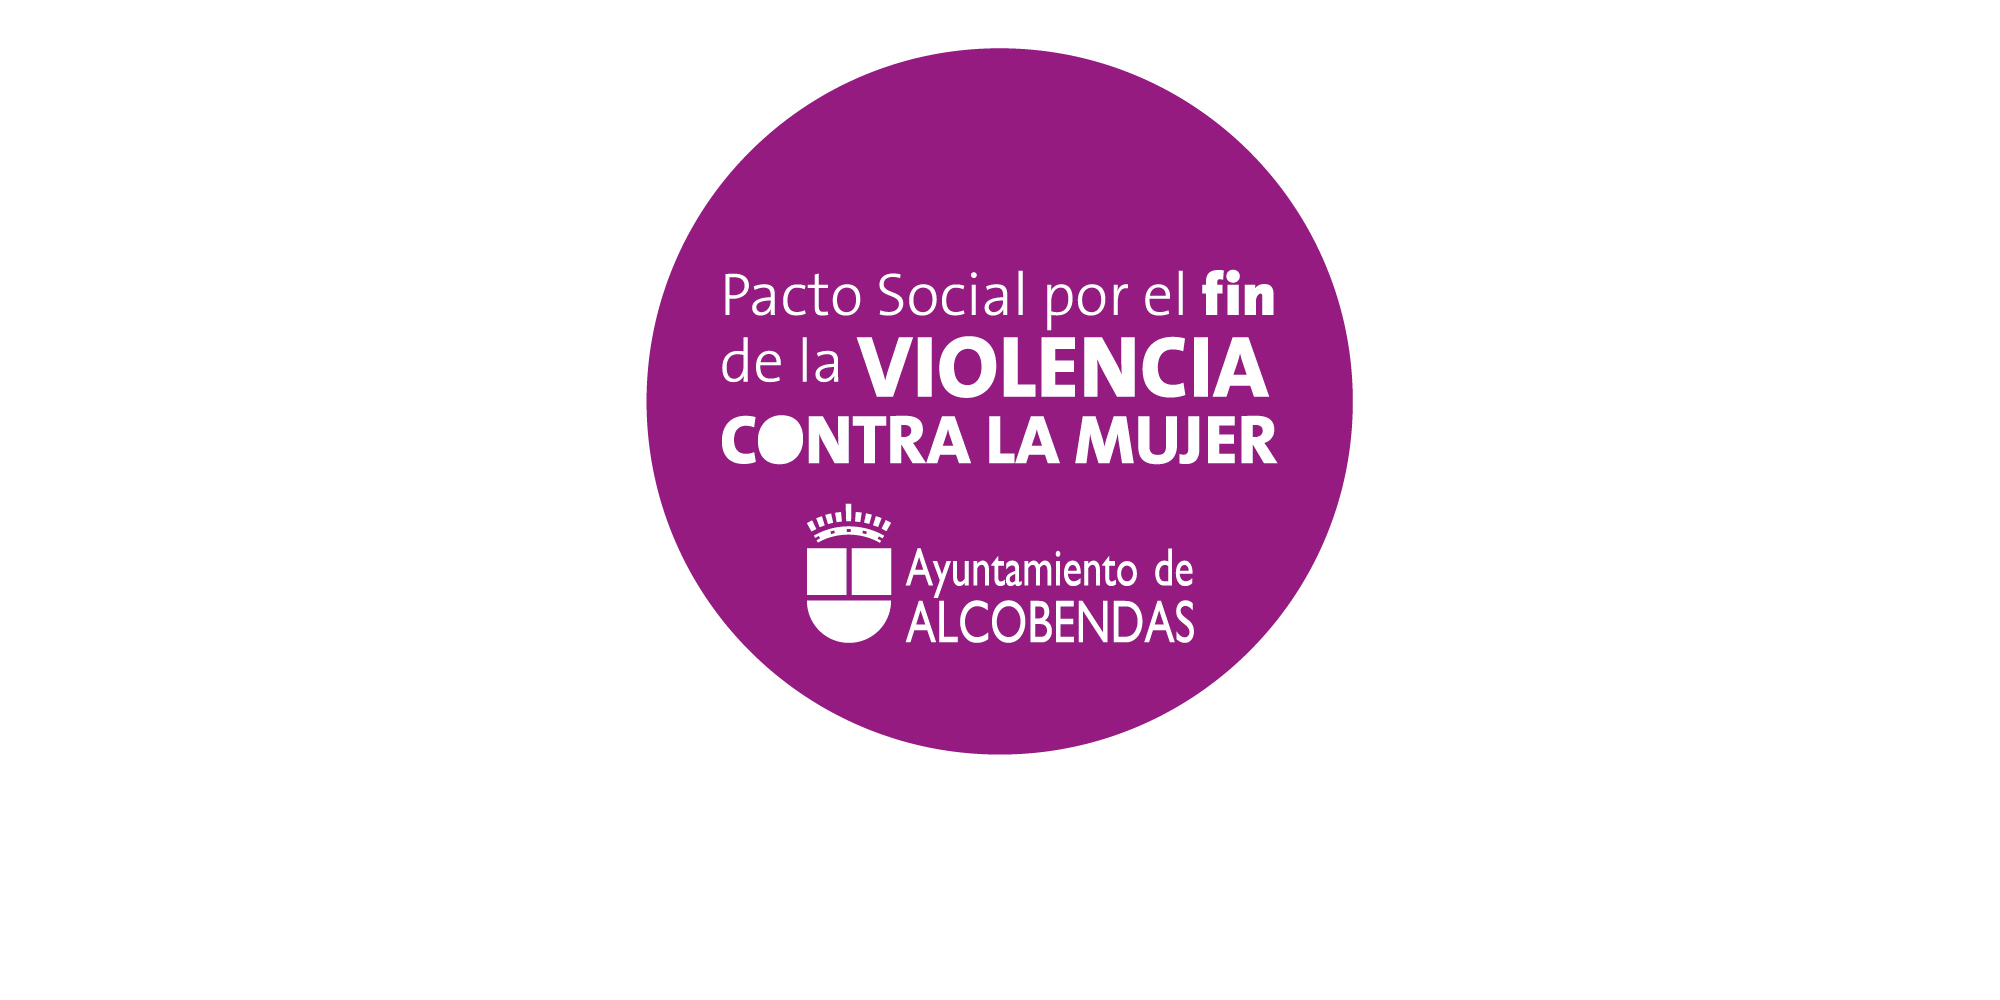 Pacto Social por el Fin de la Violencia contra la Mujer. Para grid